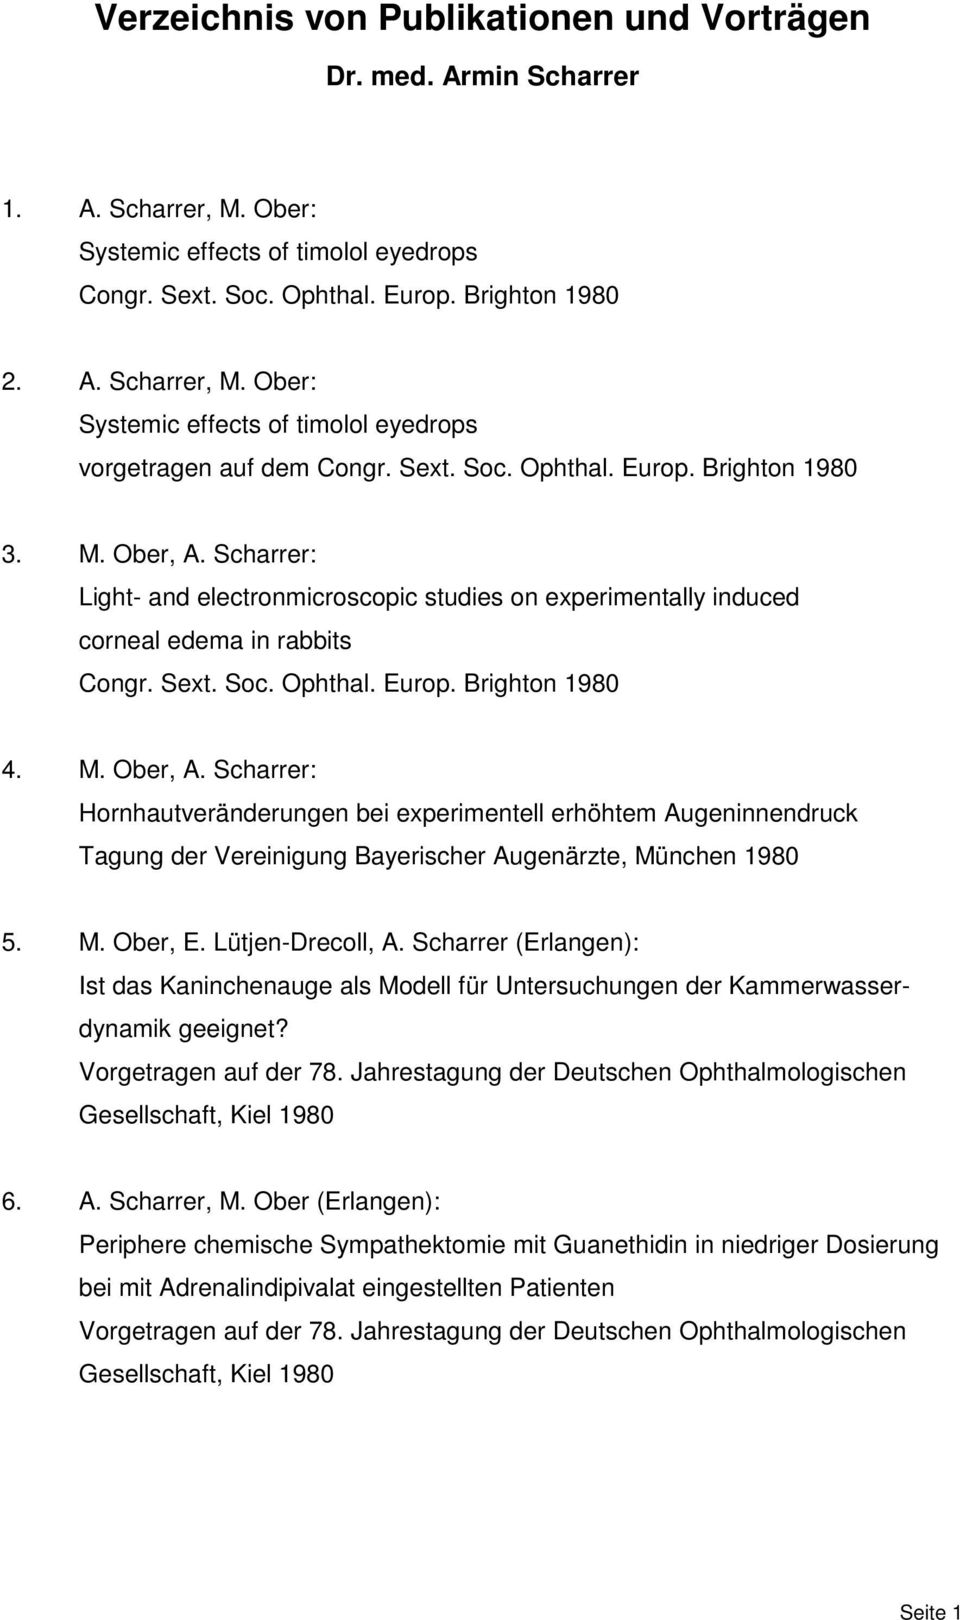 M. Ober, A. Scharrer: Hornhautveränderungen bei experimentell erhöhtem Augeninnendruck Tagung der Vereinigung Bayerischer Augenärzte, München 1980 5. M. Ober, E. Lütjen-Drecoll, A.